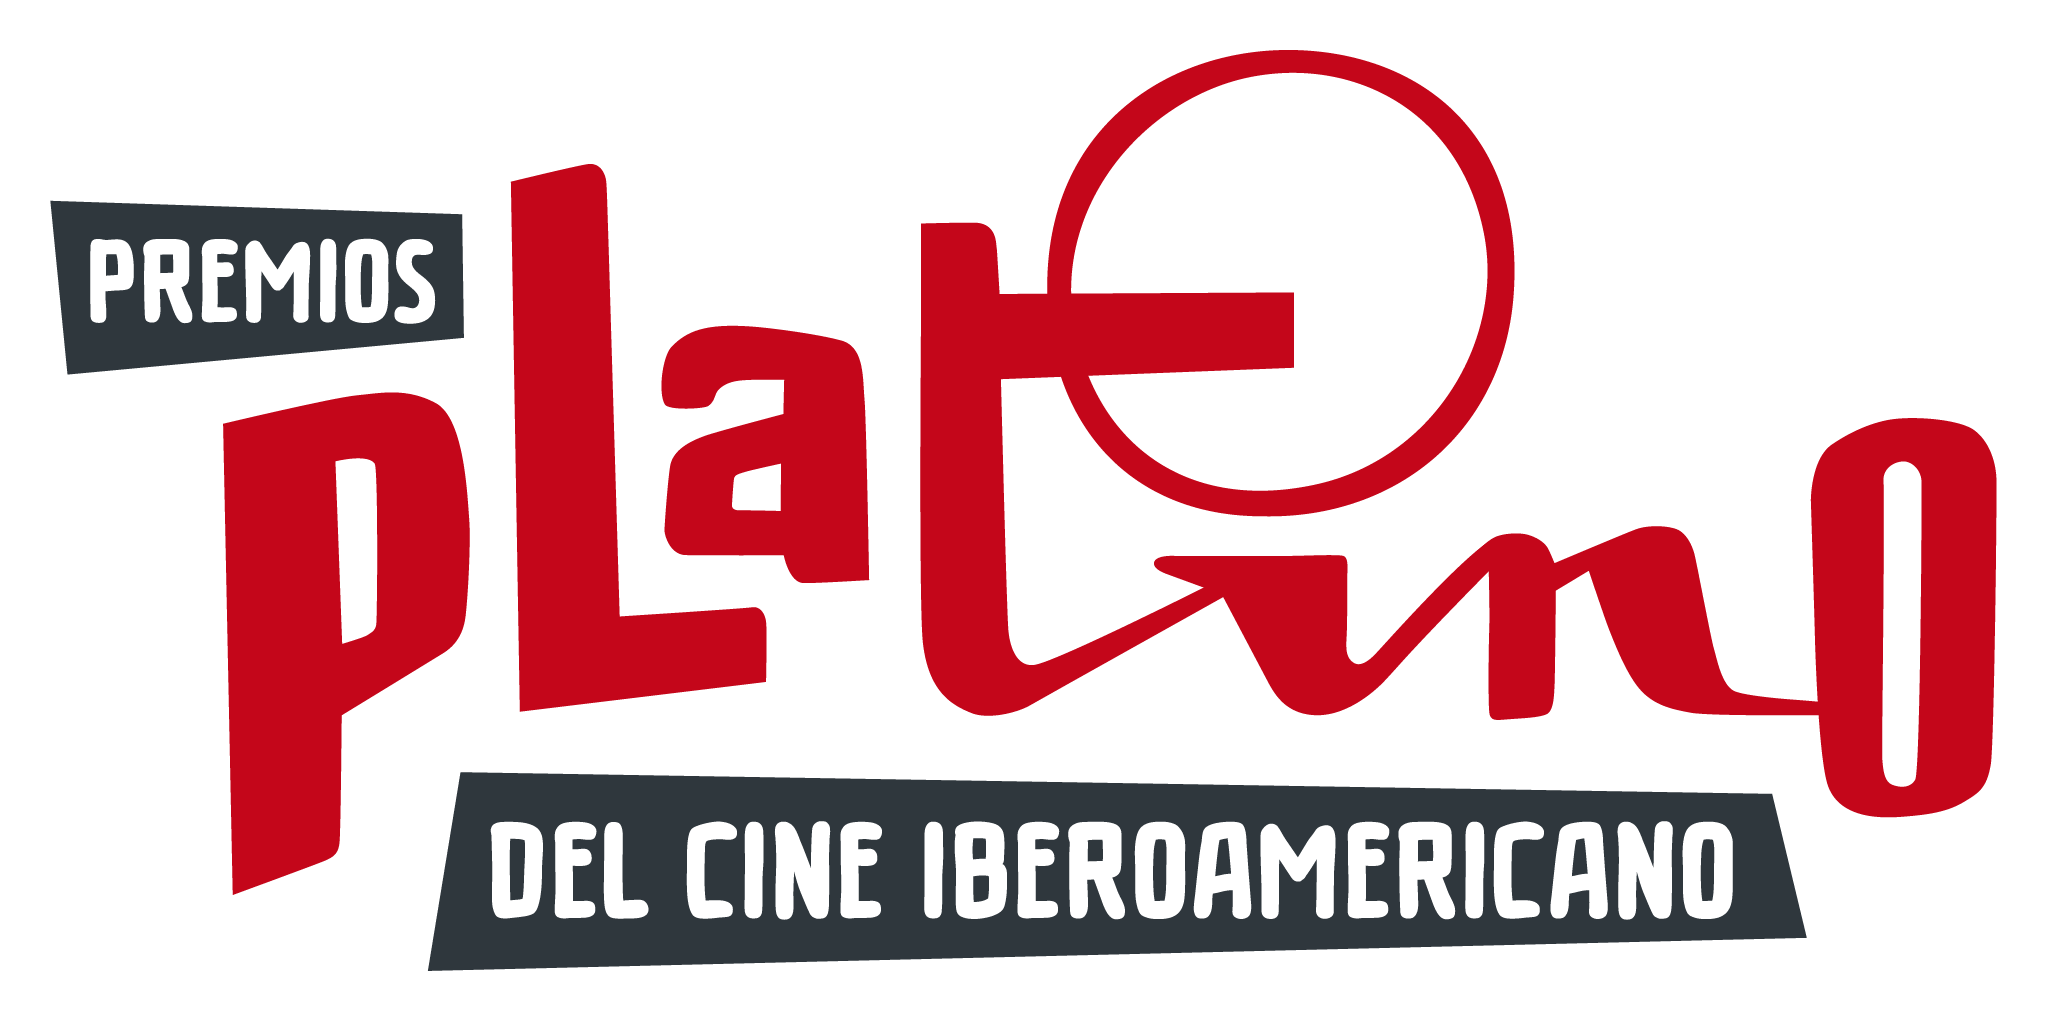 'Las niñas' y 'Antidisturbios' consiguen 6 selecciones en la lista de 20 candidaturas por categoría de la VIII Edición de los Premios PLATINO del Cine Iberoamericano